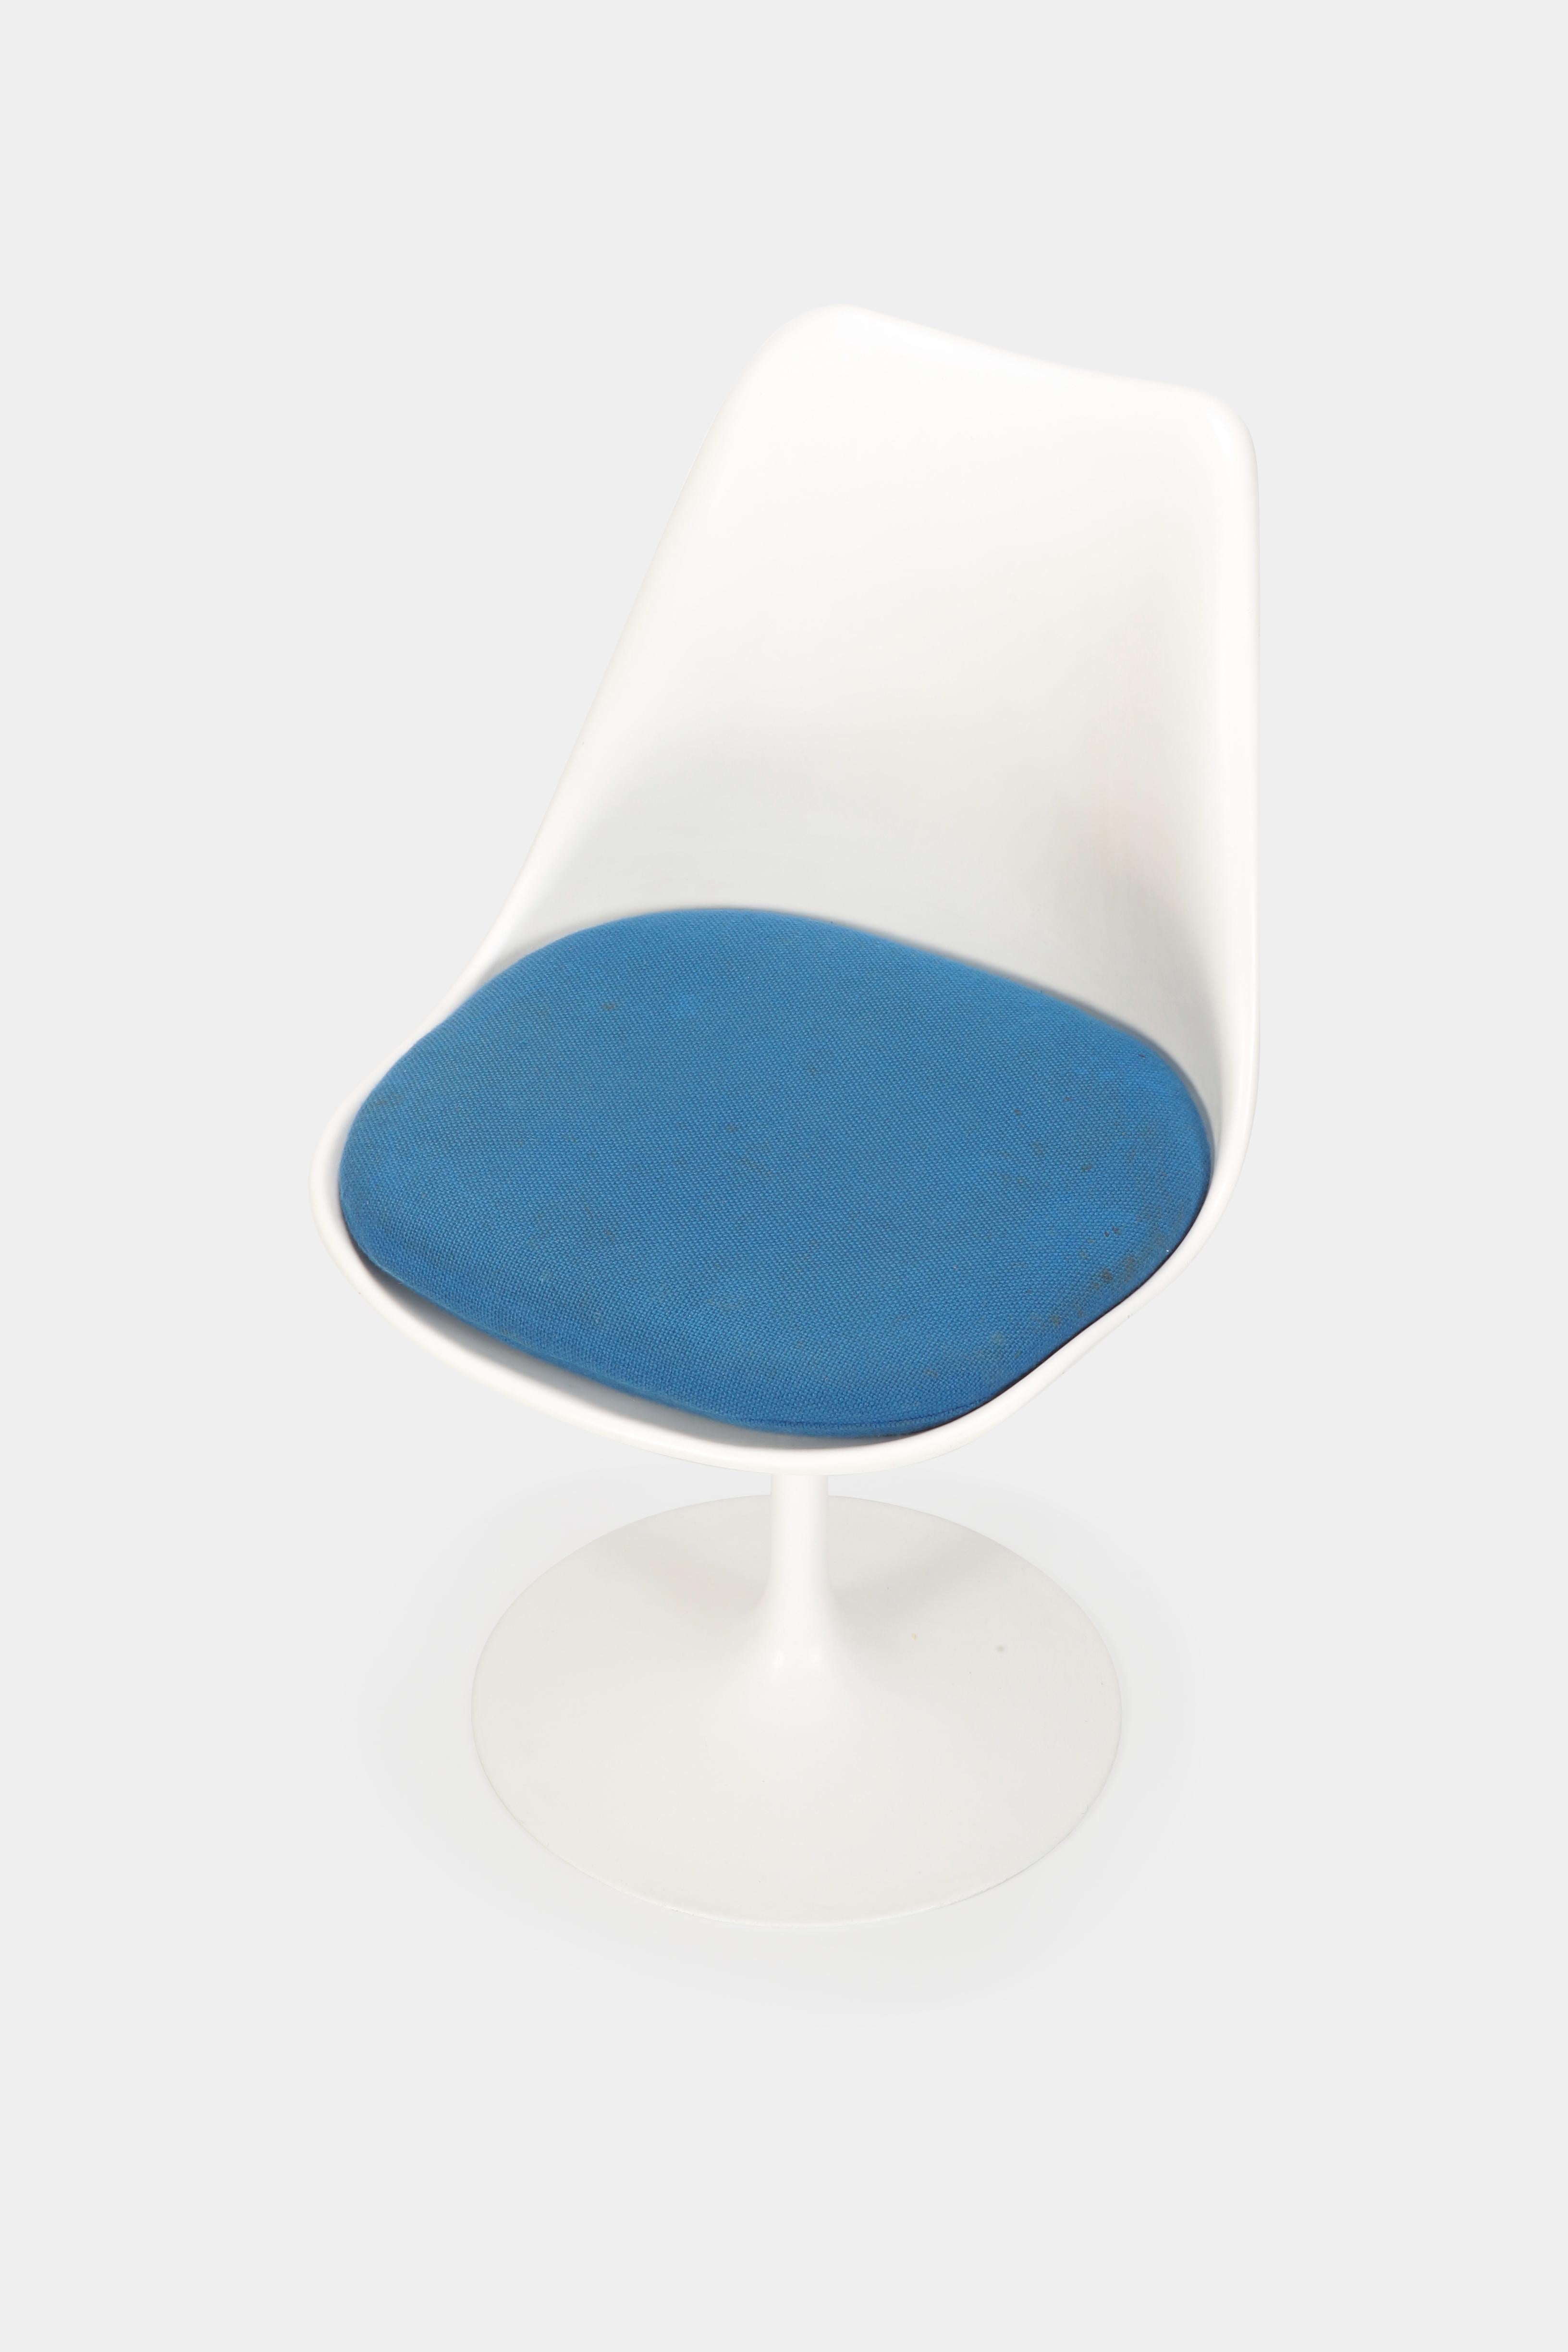 Mid-20th Century Eero Saarinen “Tulip” Chair Knoll International, 1960s